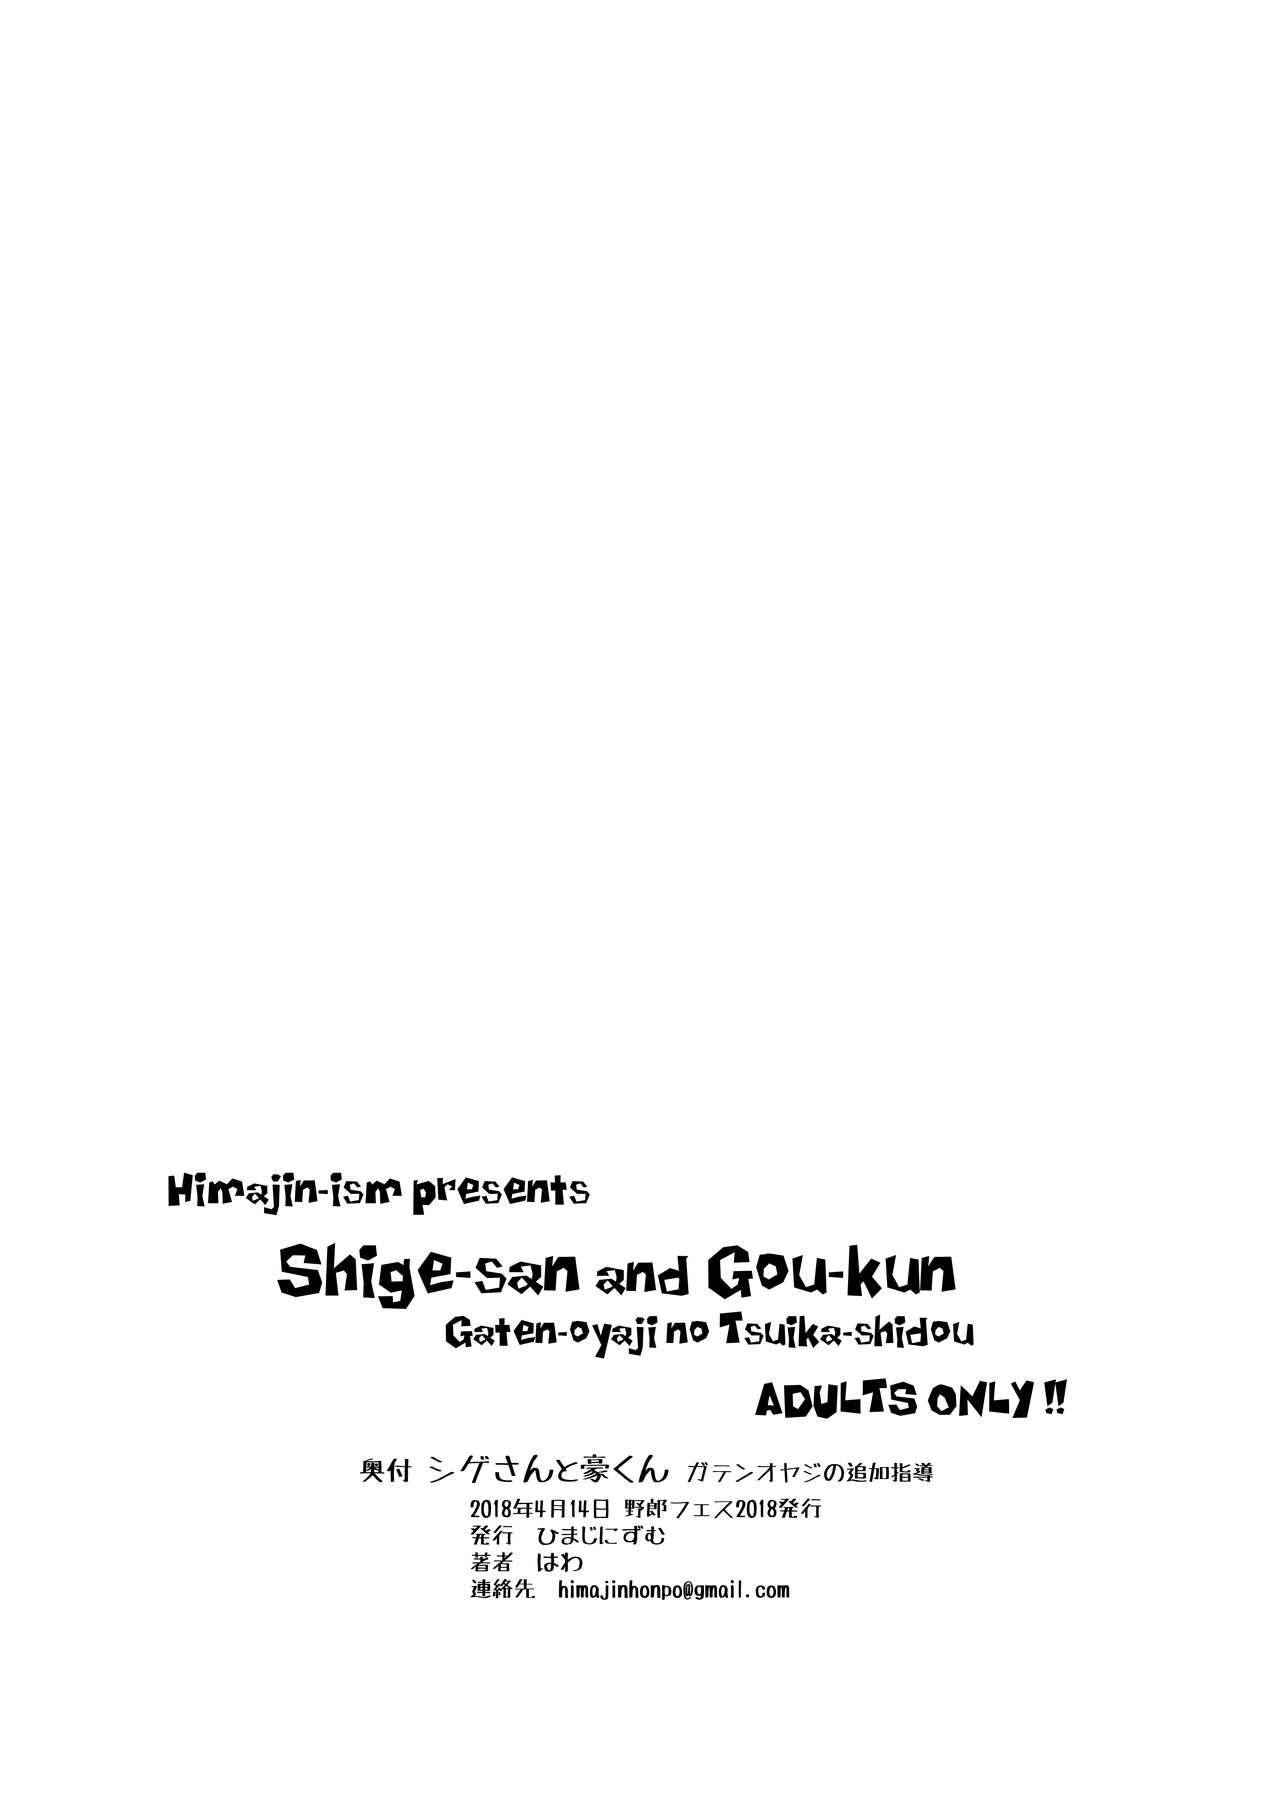 Family Taboo Gaten-oyaji no Tsuika Shidou - Original Verga - Page 10